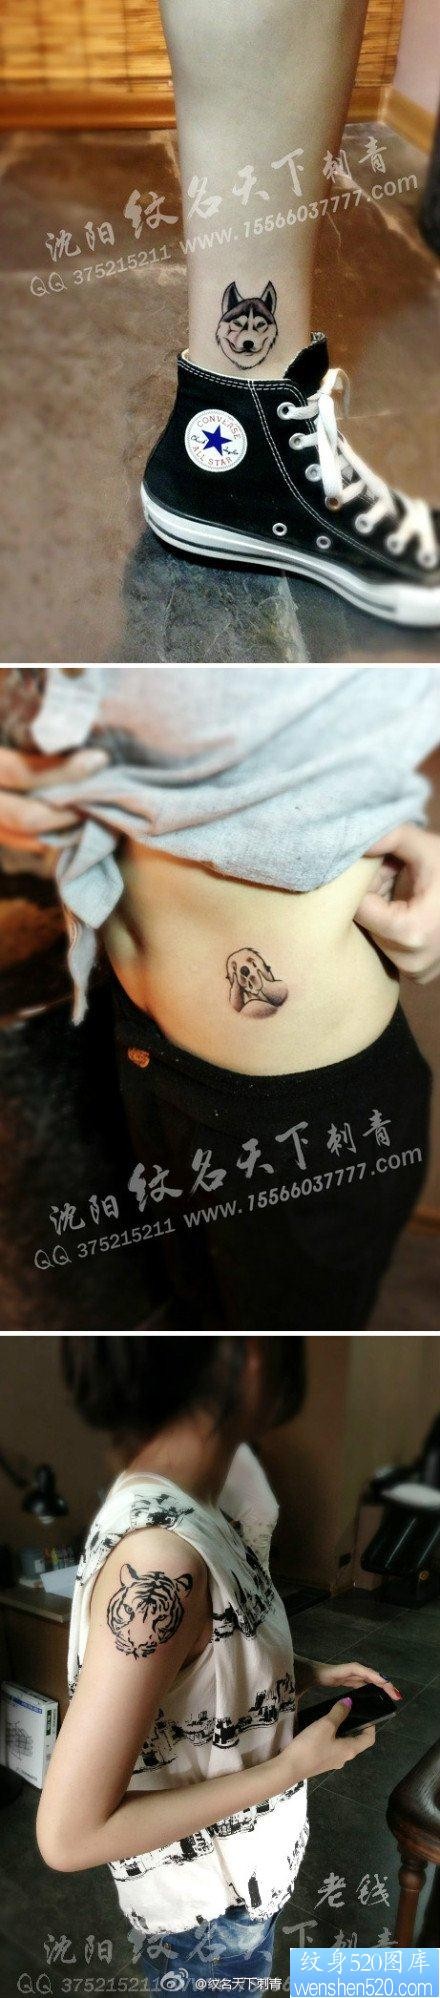 一组可爱流行的女孩子喜欢的小动物纹身图片